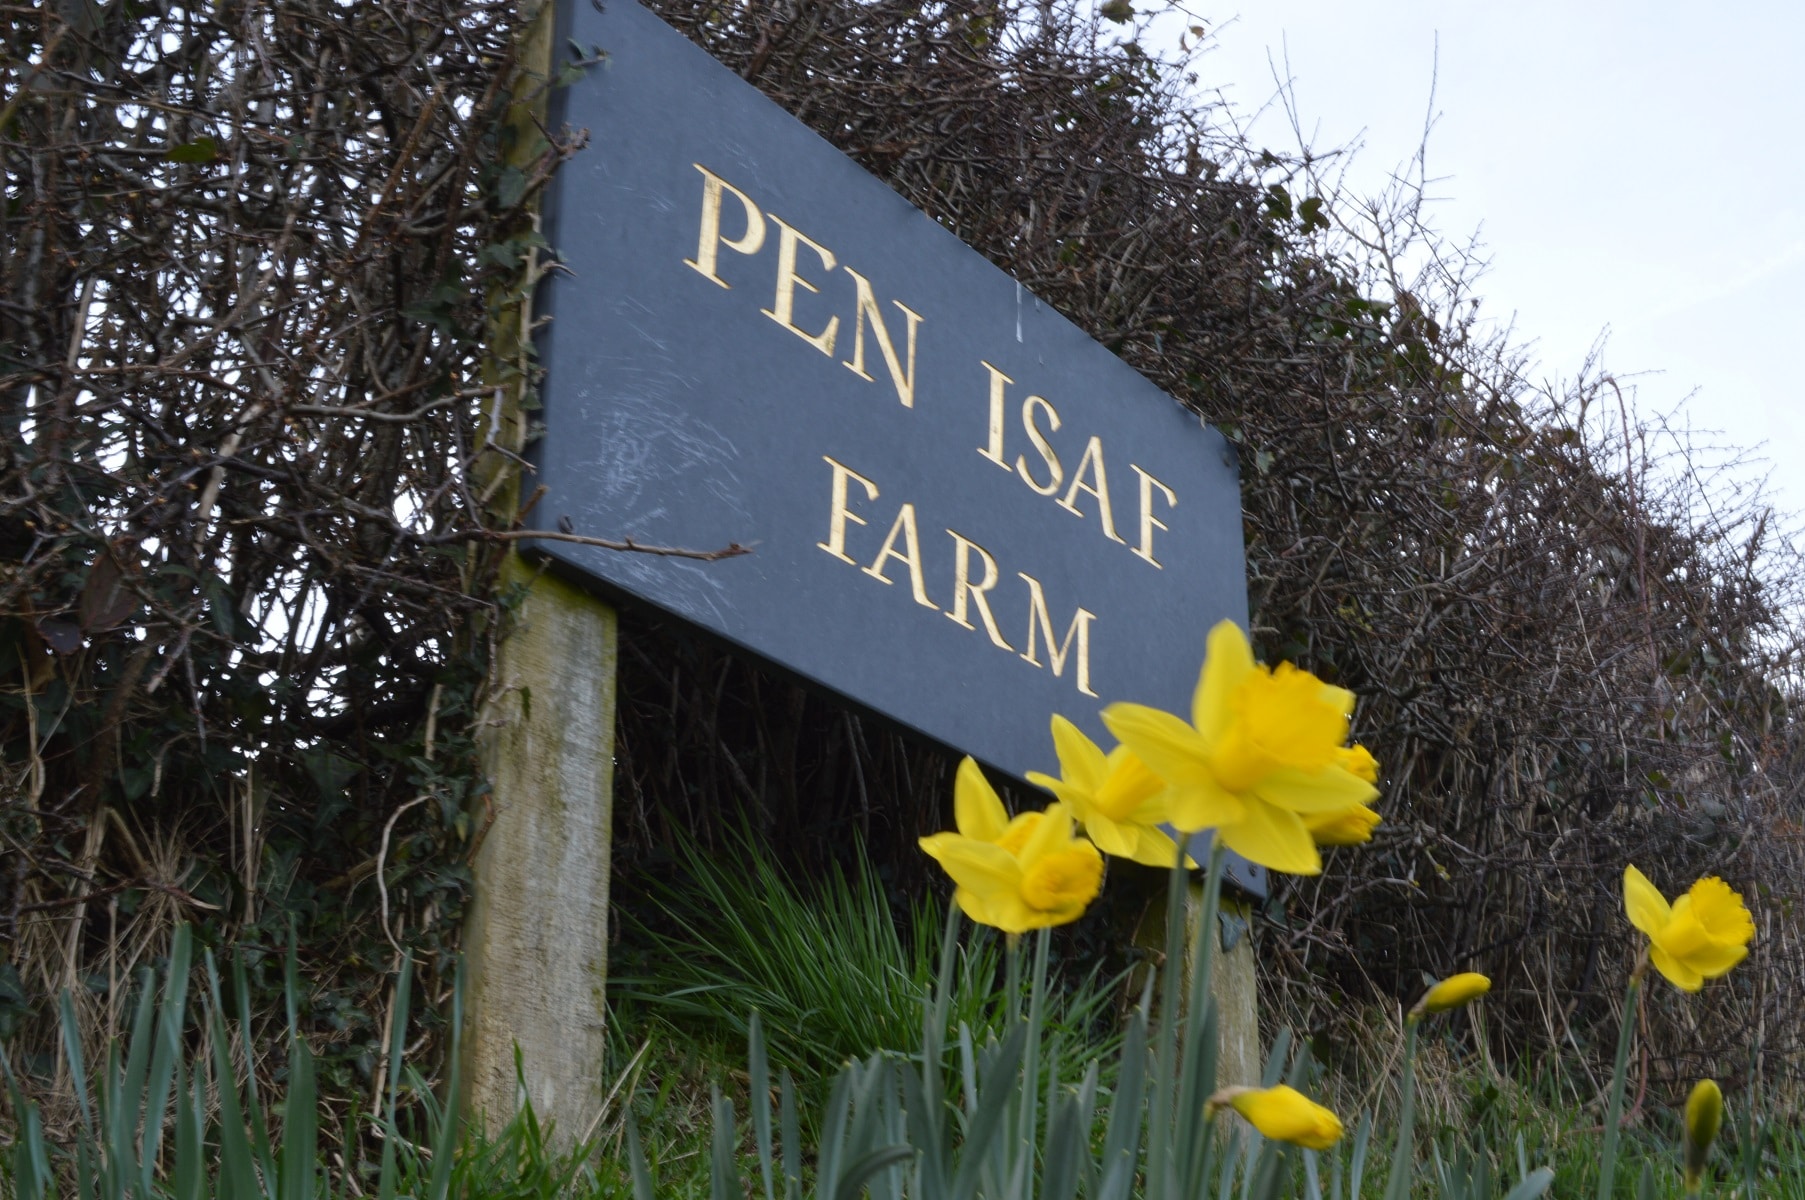 Pen Isaf Farm